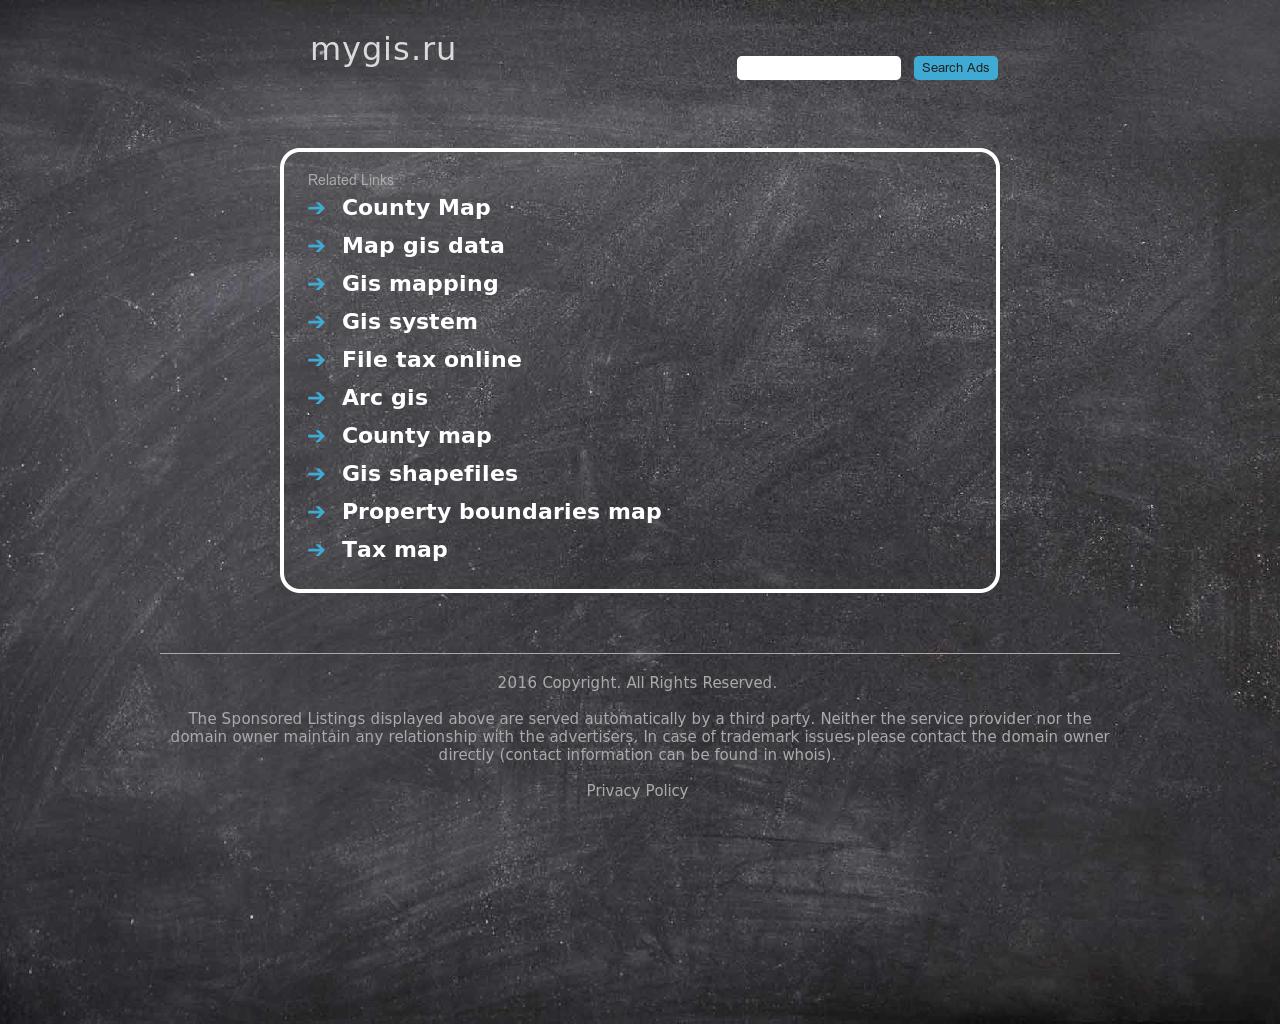 Изображение сайта mygis.ru в разрешении 1280x1024